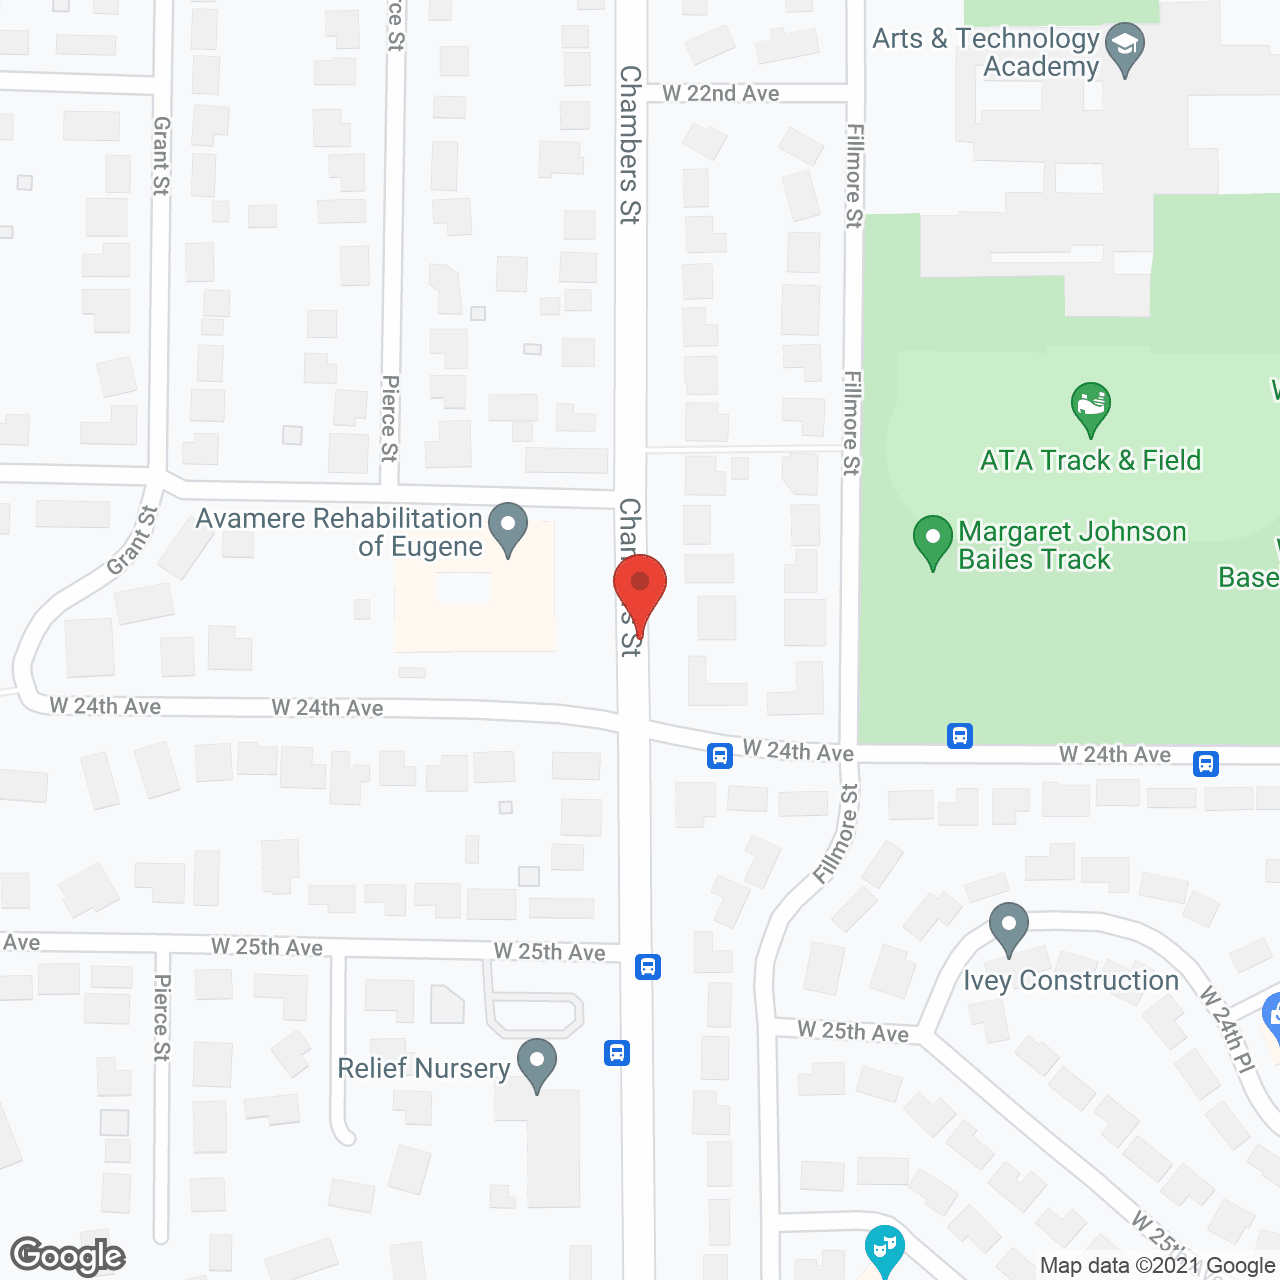 Avamere Rehabilitation of Eugene in google map